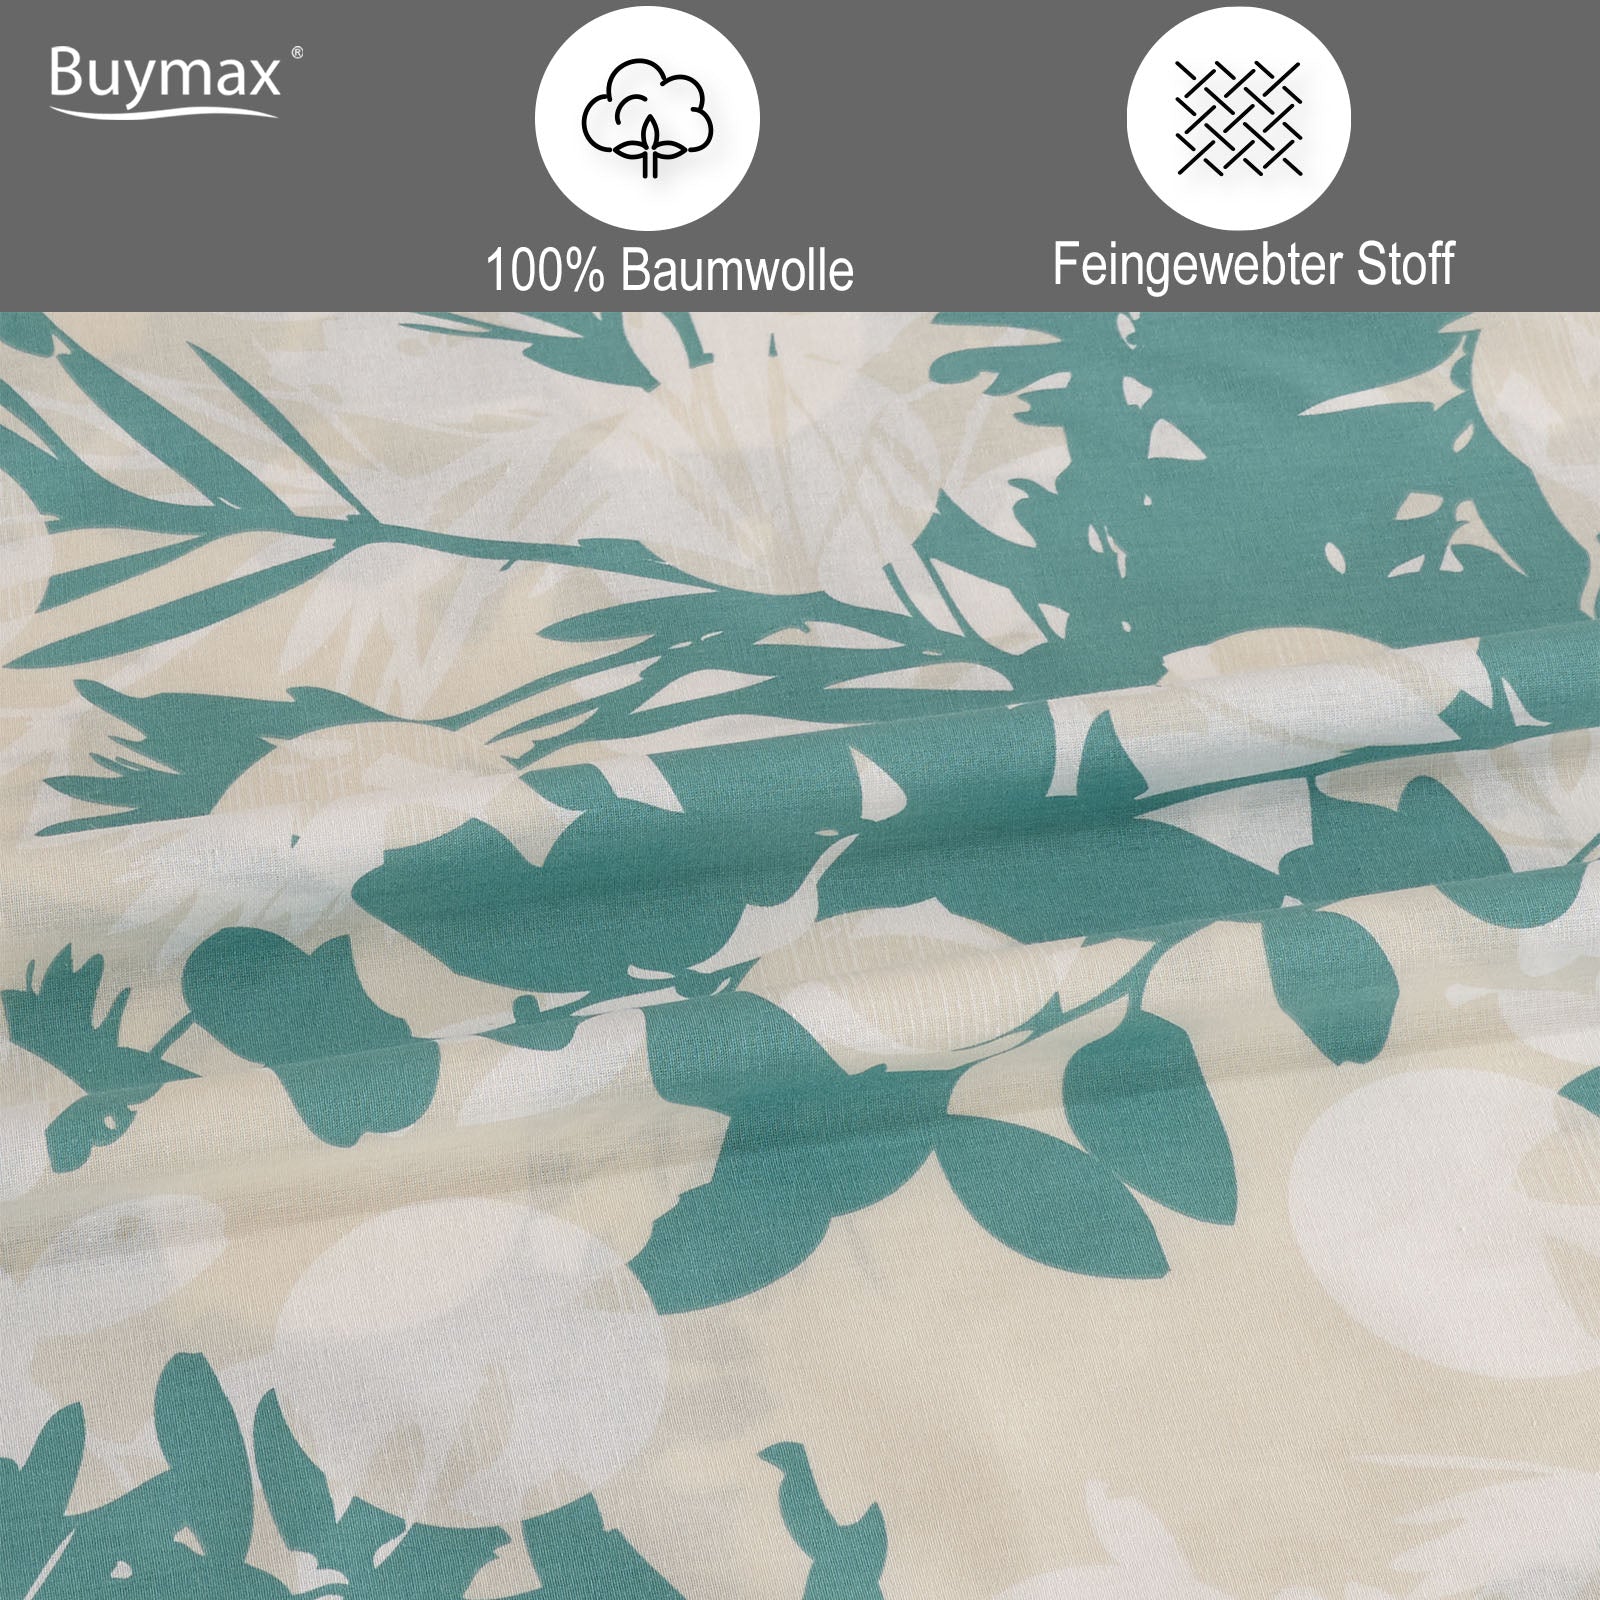 Bettwäsche, 100% Baumwolle Renforce mit Reißverschluss - Buymax